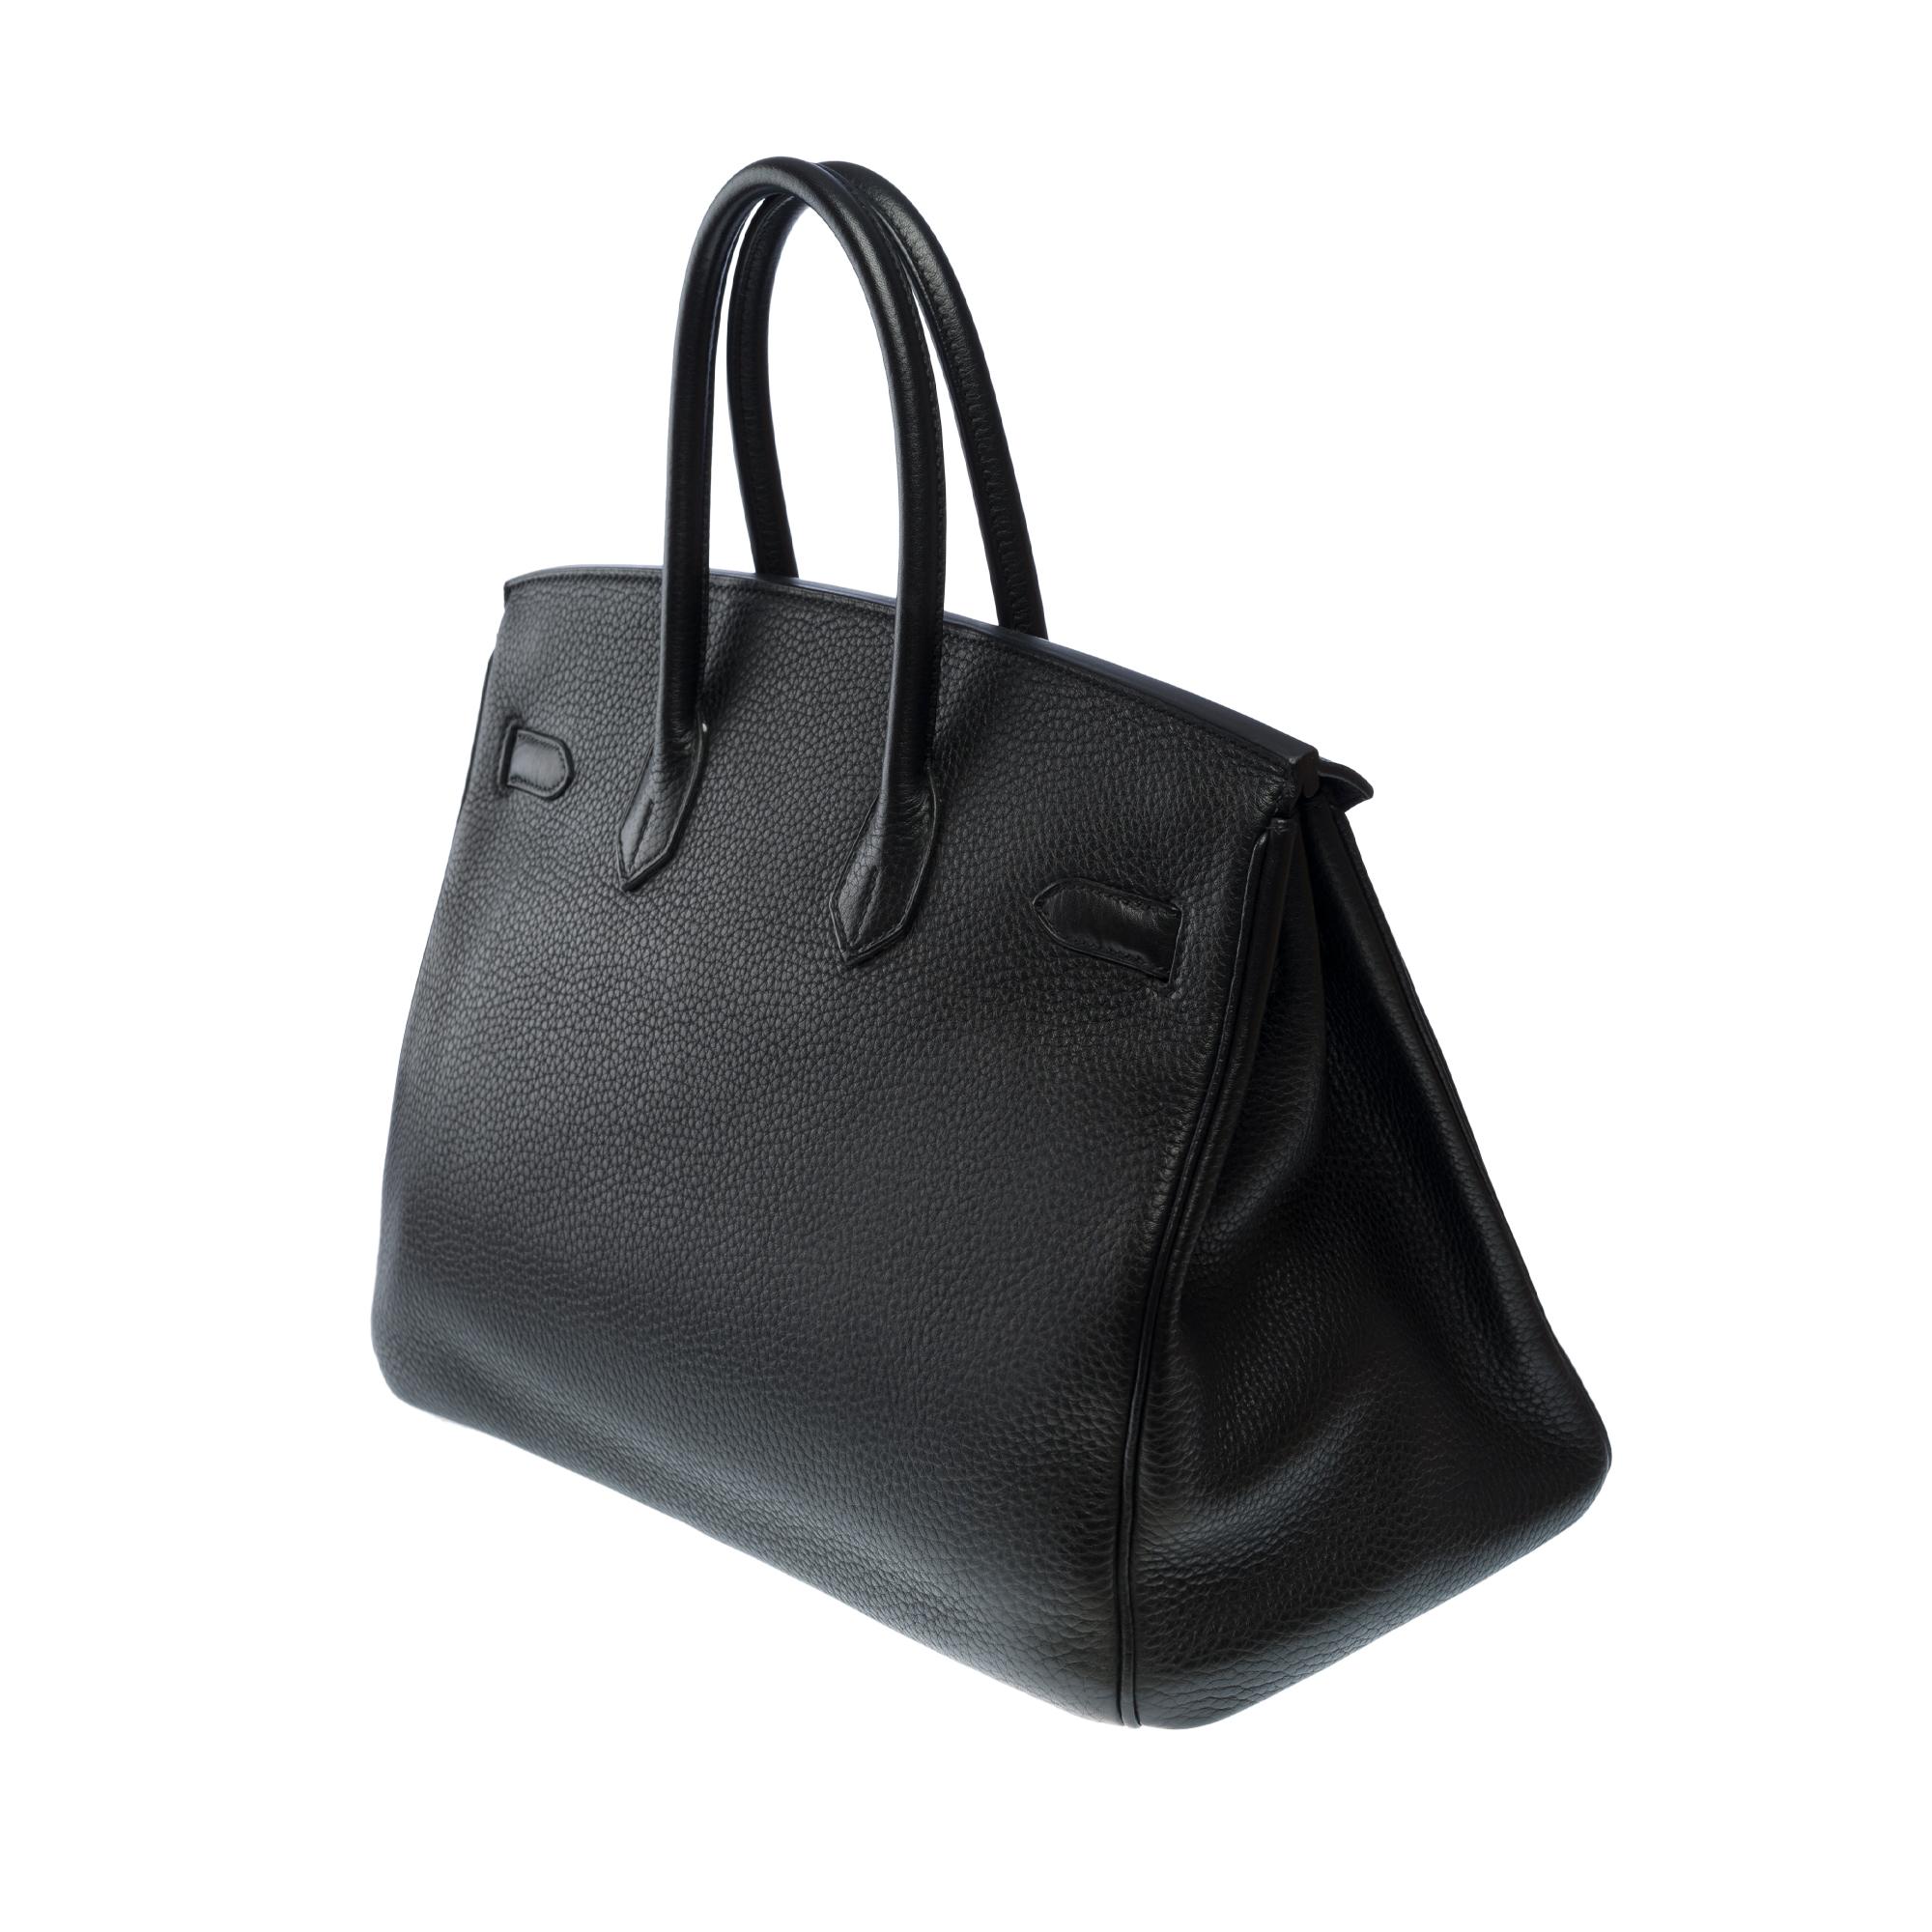 Superbe sac à main Hermès Birkin 35 en cuir Togo noir, SHW 1